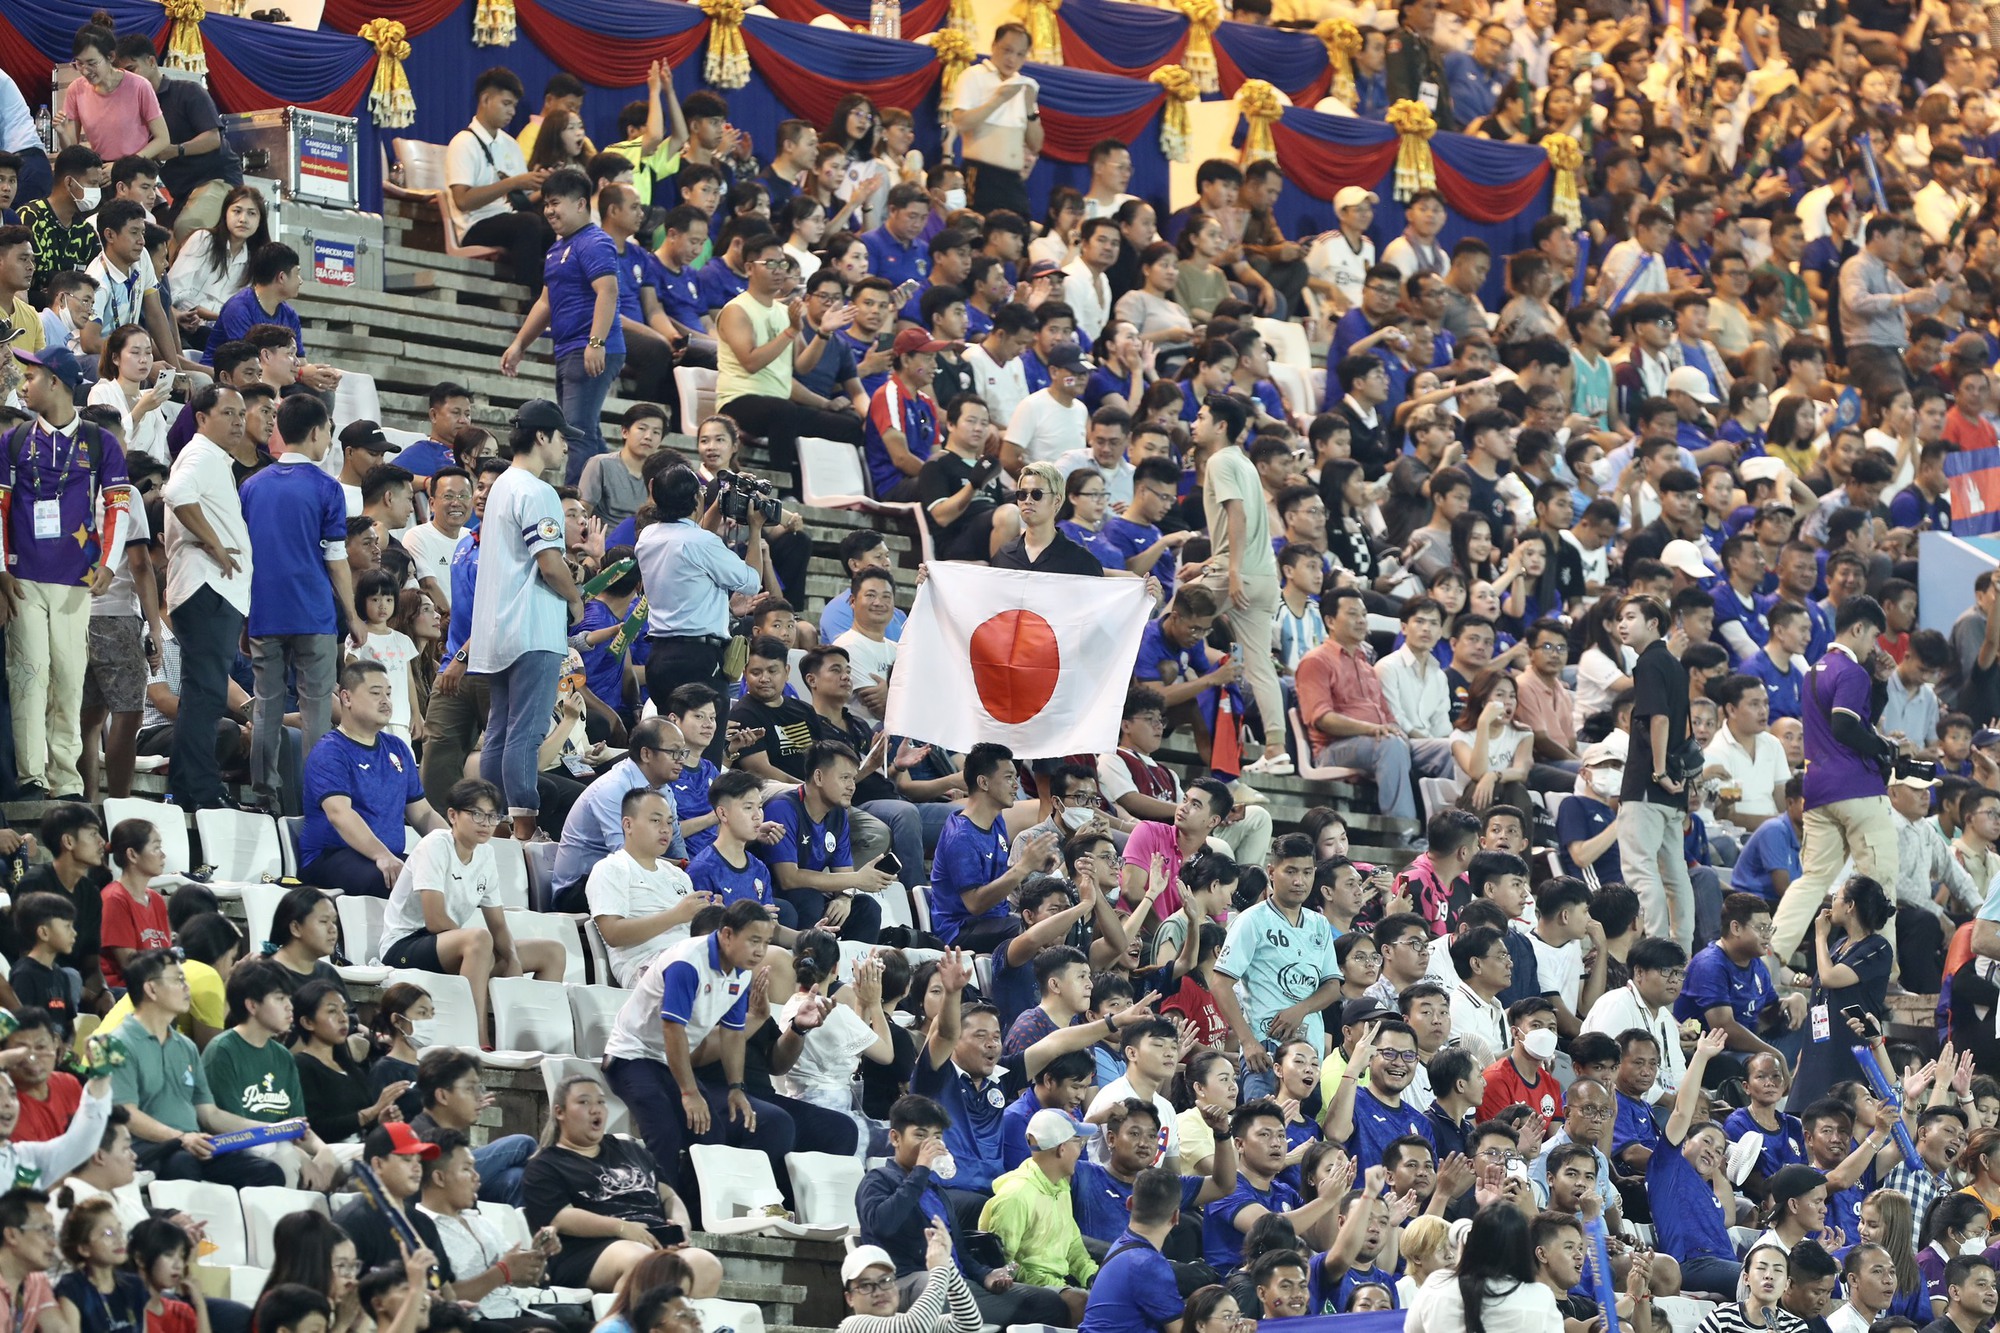 Sắc thái mới của HLV Keisuke Honda ‘cực chất’, CĐV Campuchia xem kín sân Olympic - Ảnh 2.